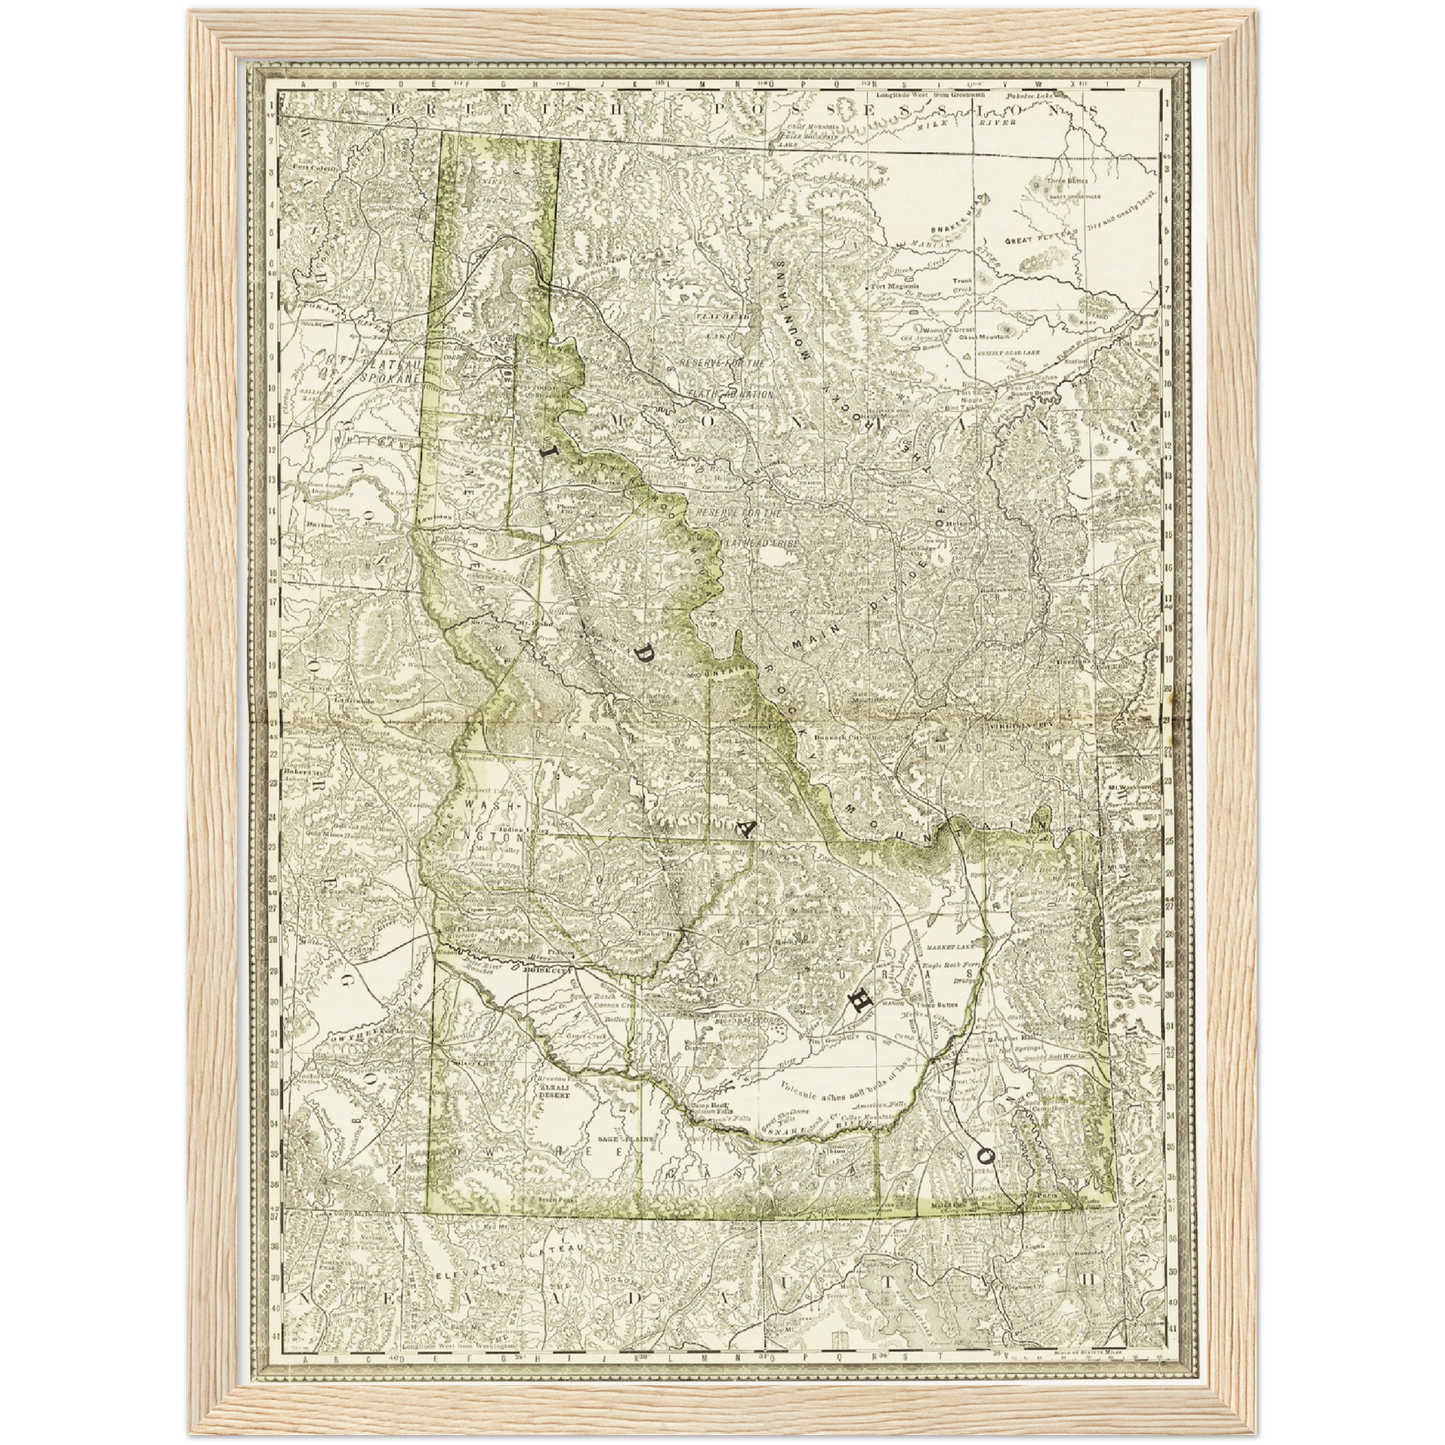 Historische Landkarte Idaho um 1882